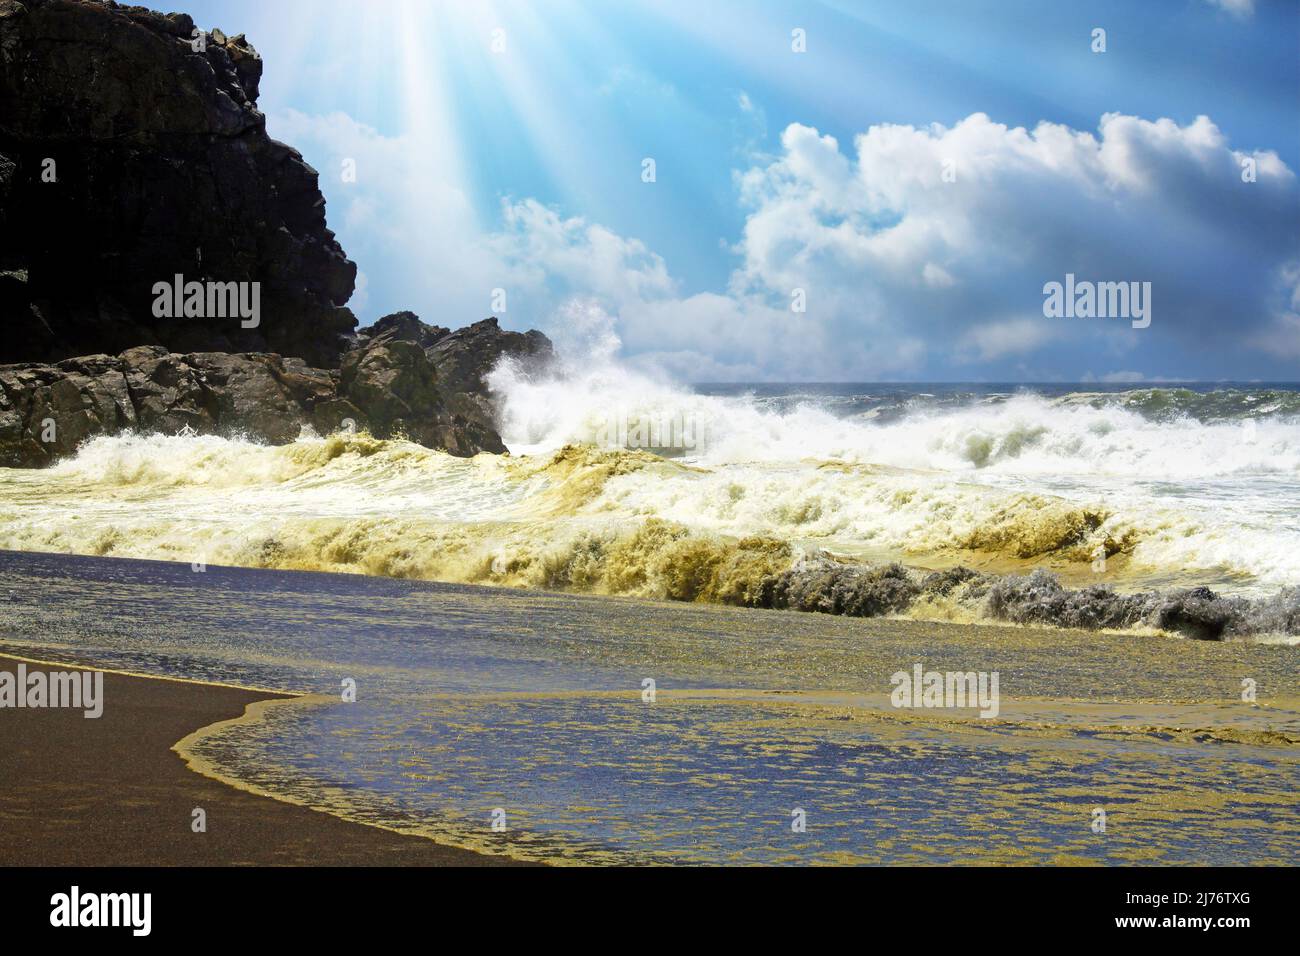 Vagues de surf violentes et lourdes se brisant sur une plage de sable de lave noir isolée et des rochers, pulvérisation de mer et mousse, rayons du soleil nuages de contre-jour - Cobquecura, Chili Banque D'Images